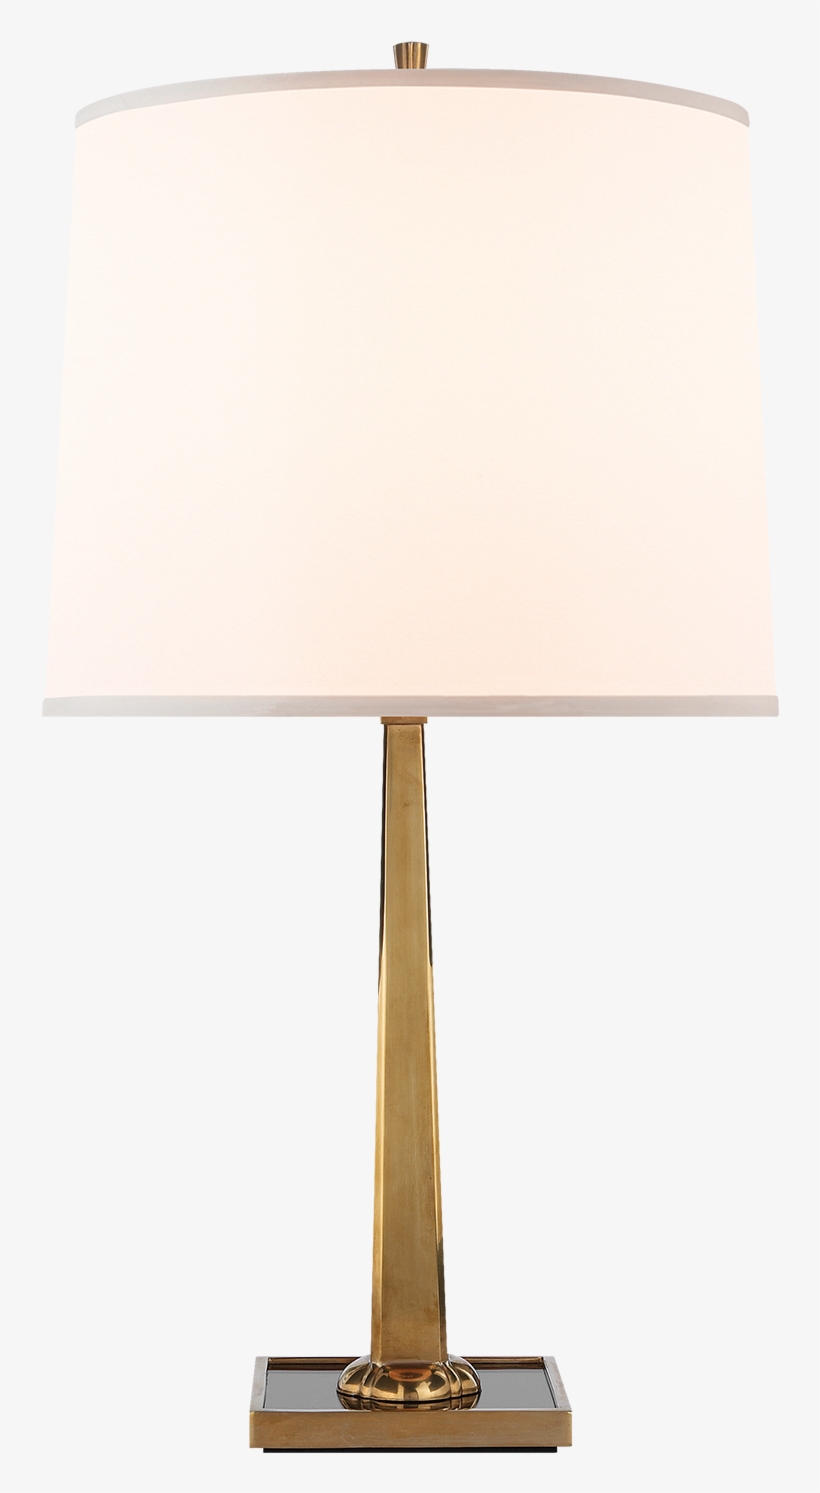 Petal Desk Lamp - Lampshade, transparent png #7705291